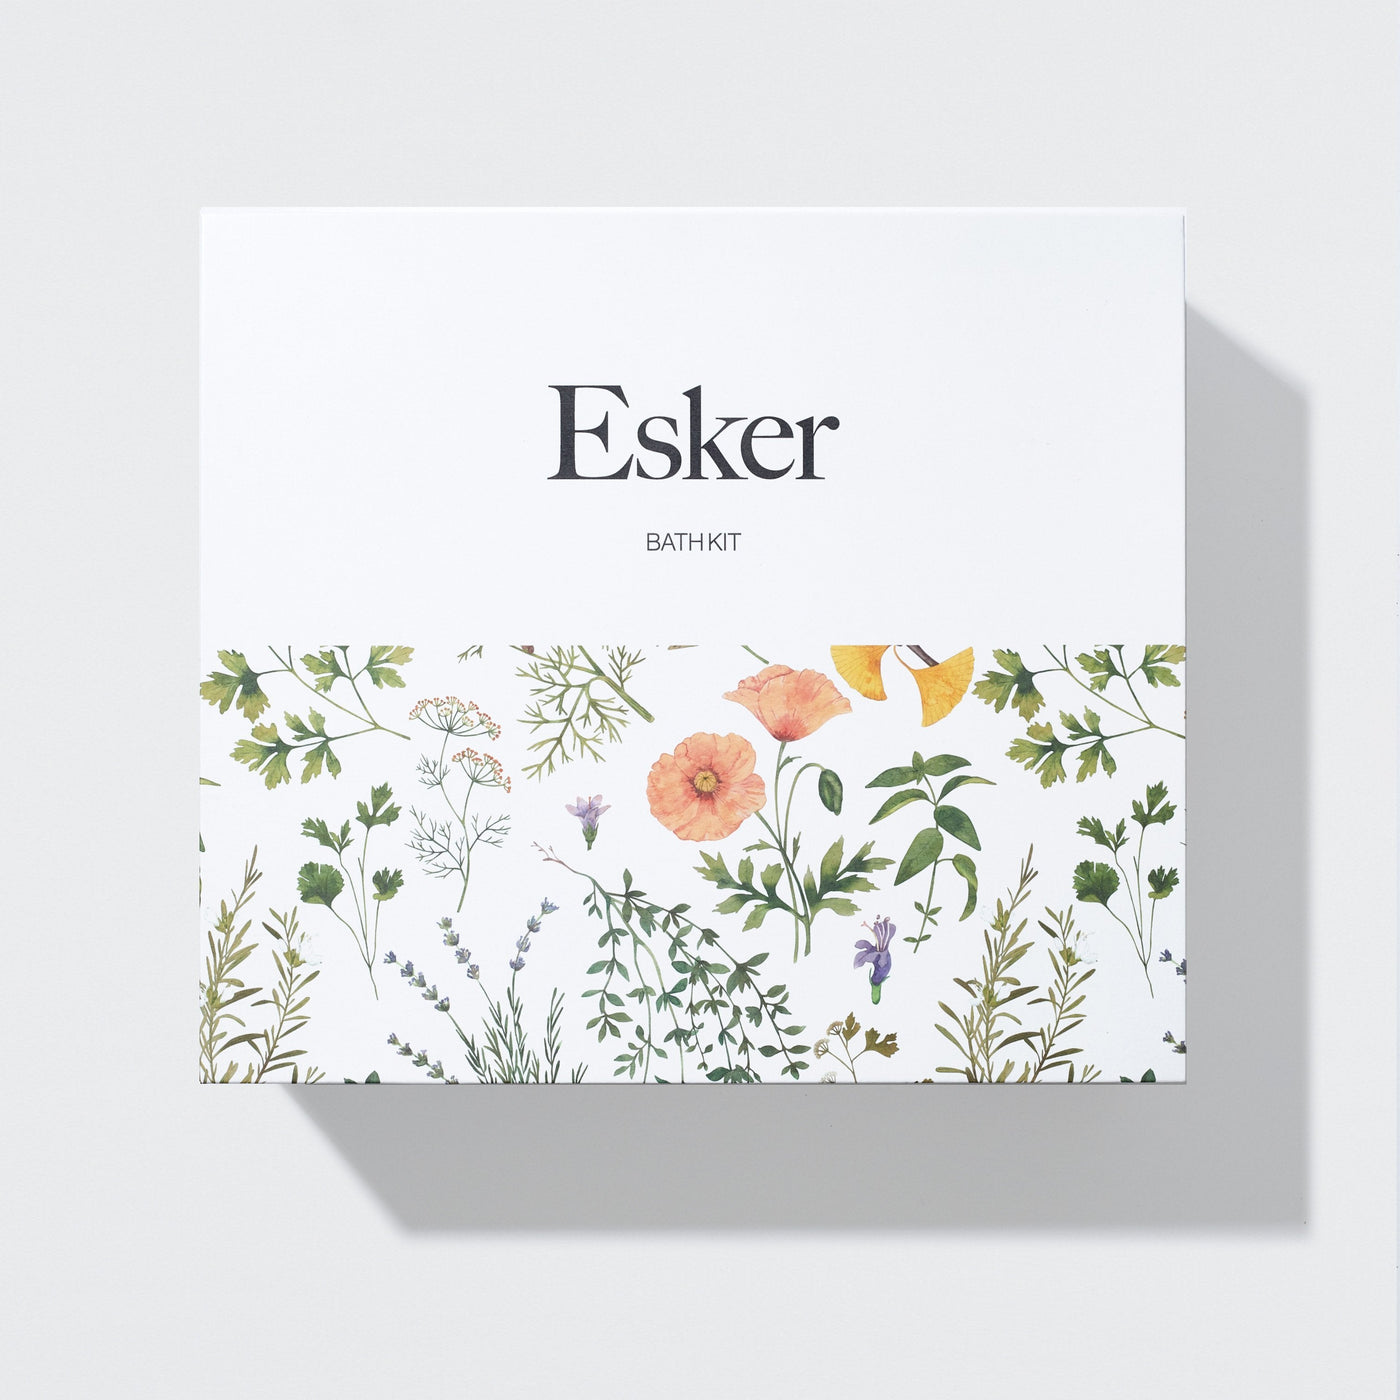 Firming Bath Kit by Esker